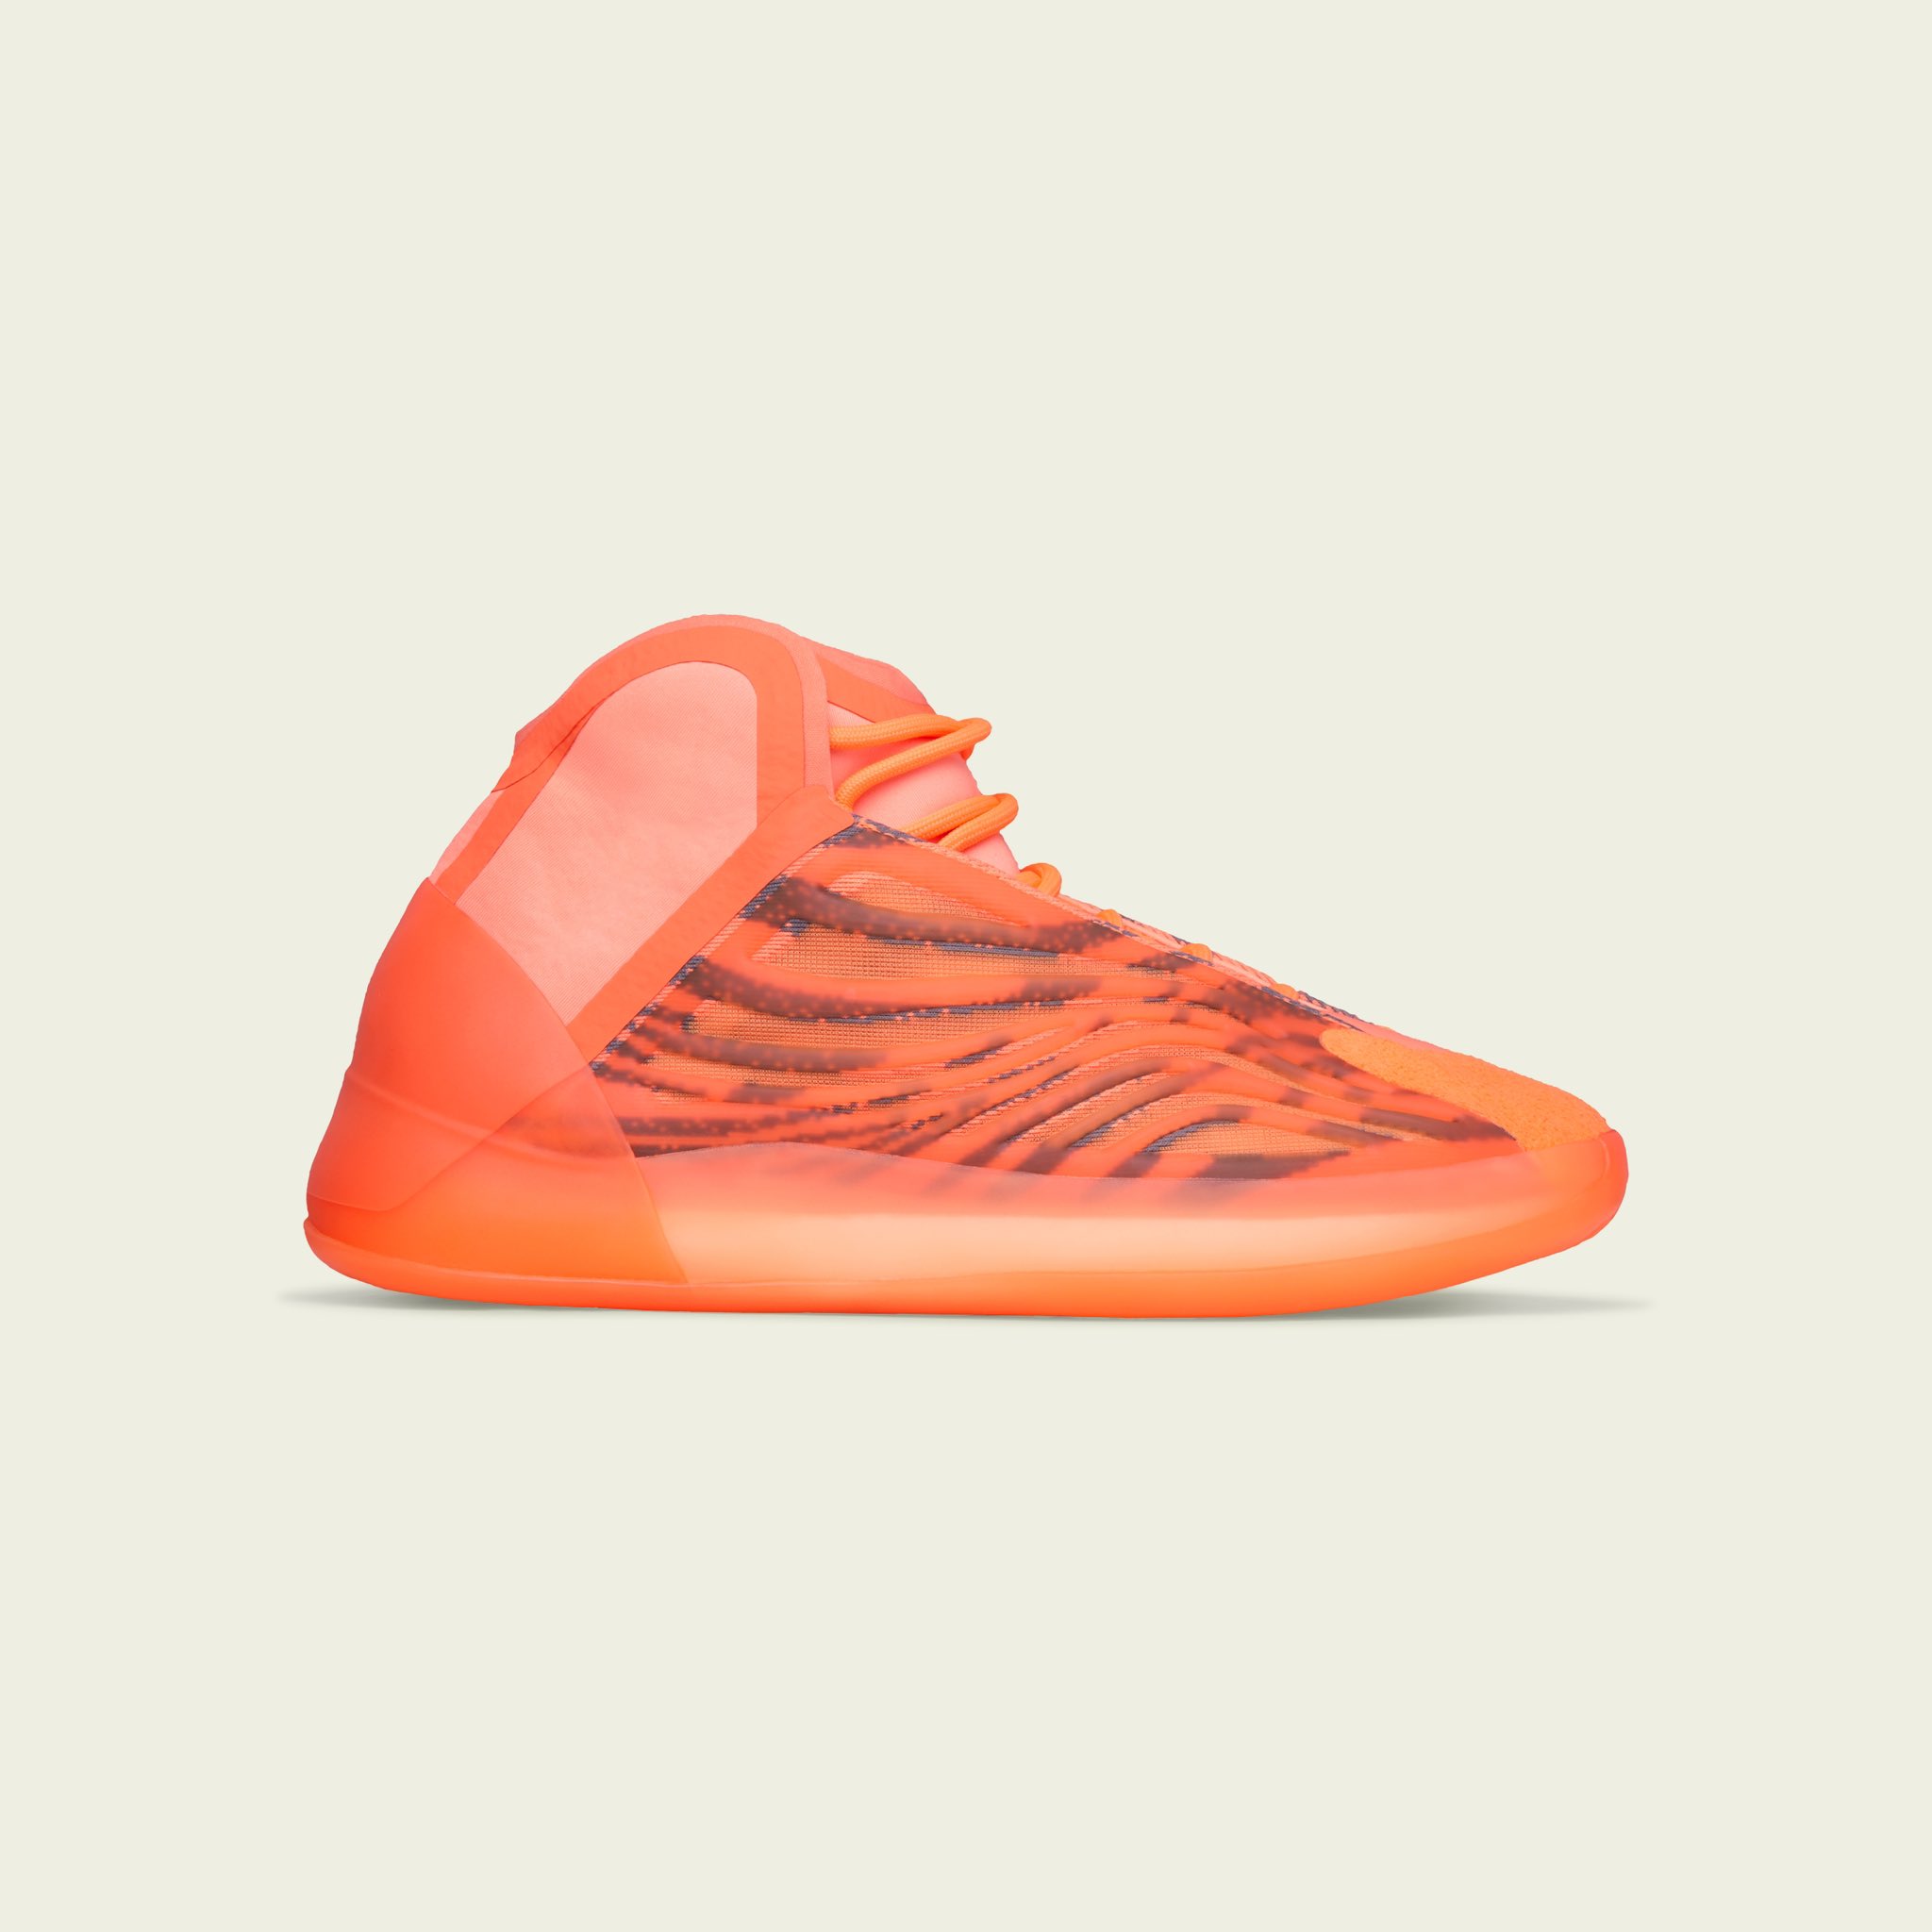 KicksFinder on Twitter: "OFFICIAL IMAGES: adidas Yeezy QNTM "Hi-Res Orange"  🍊 🗓️ 2023 📝 GW5308 💰 $250 USD 📸 @brandon1an 💵COP OR 🚮DROP?  https://t.co/sE73rCu0Il" / X